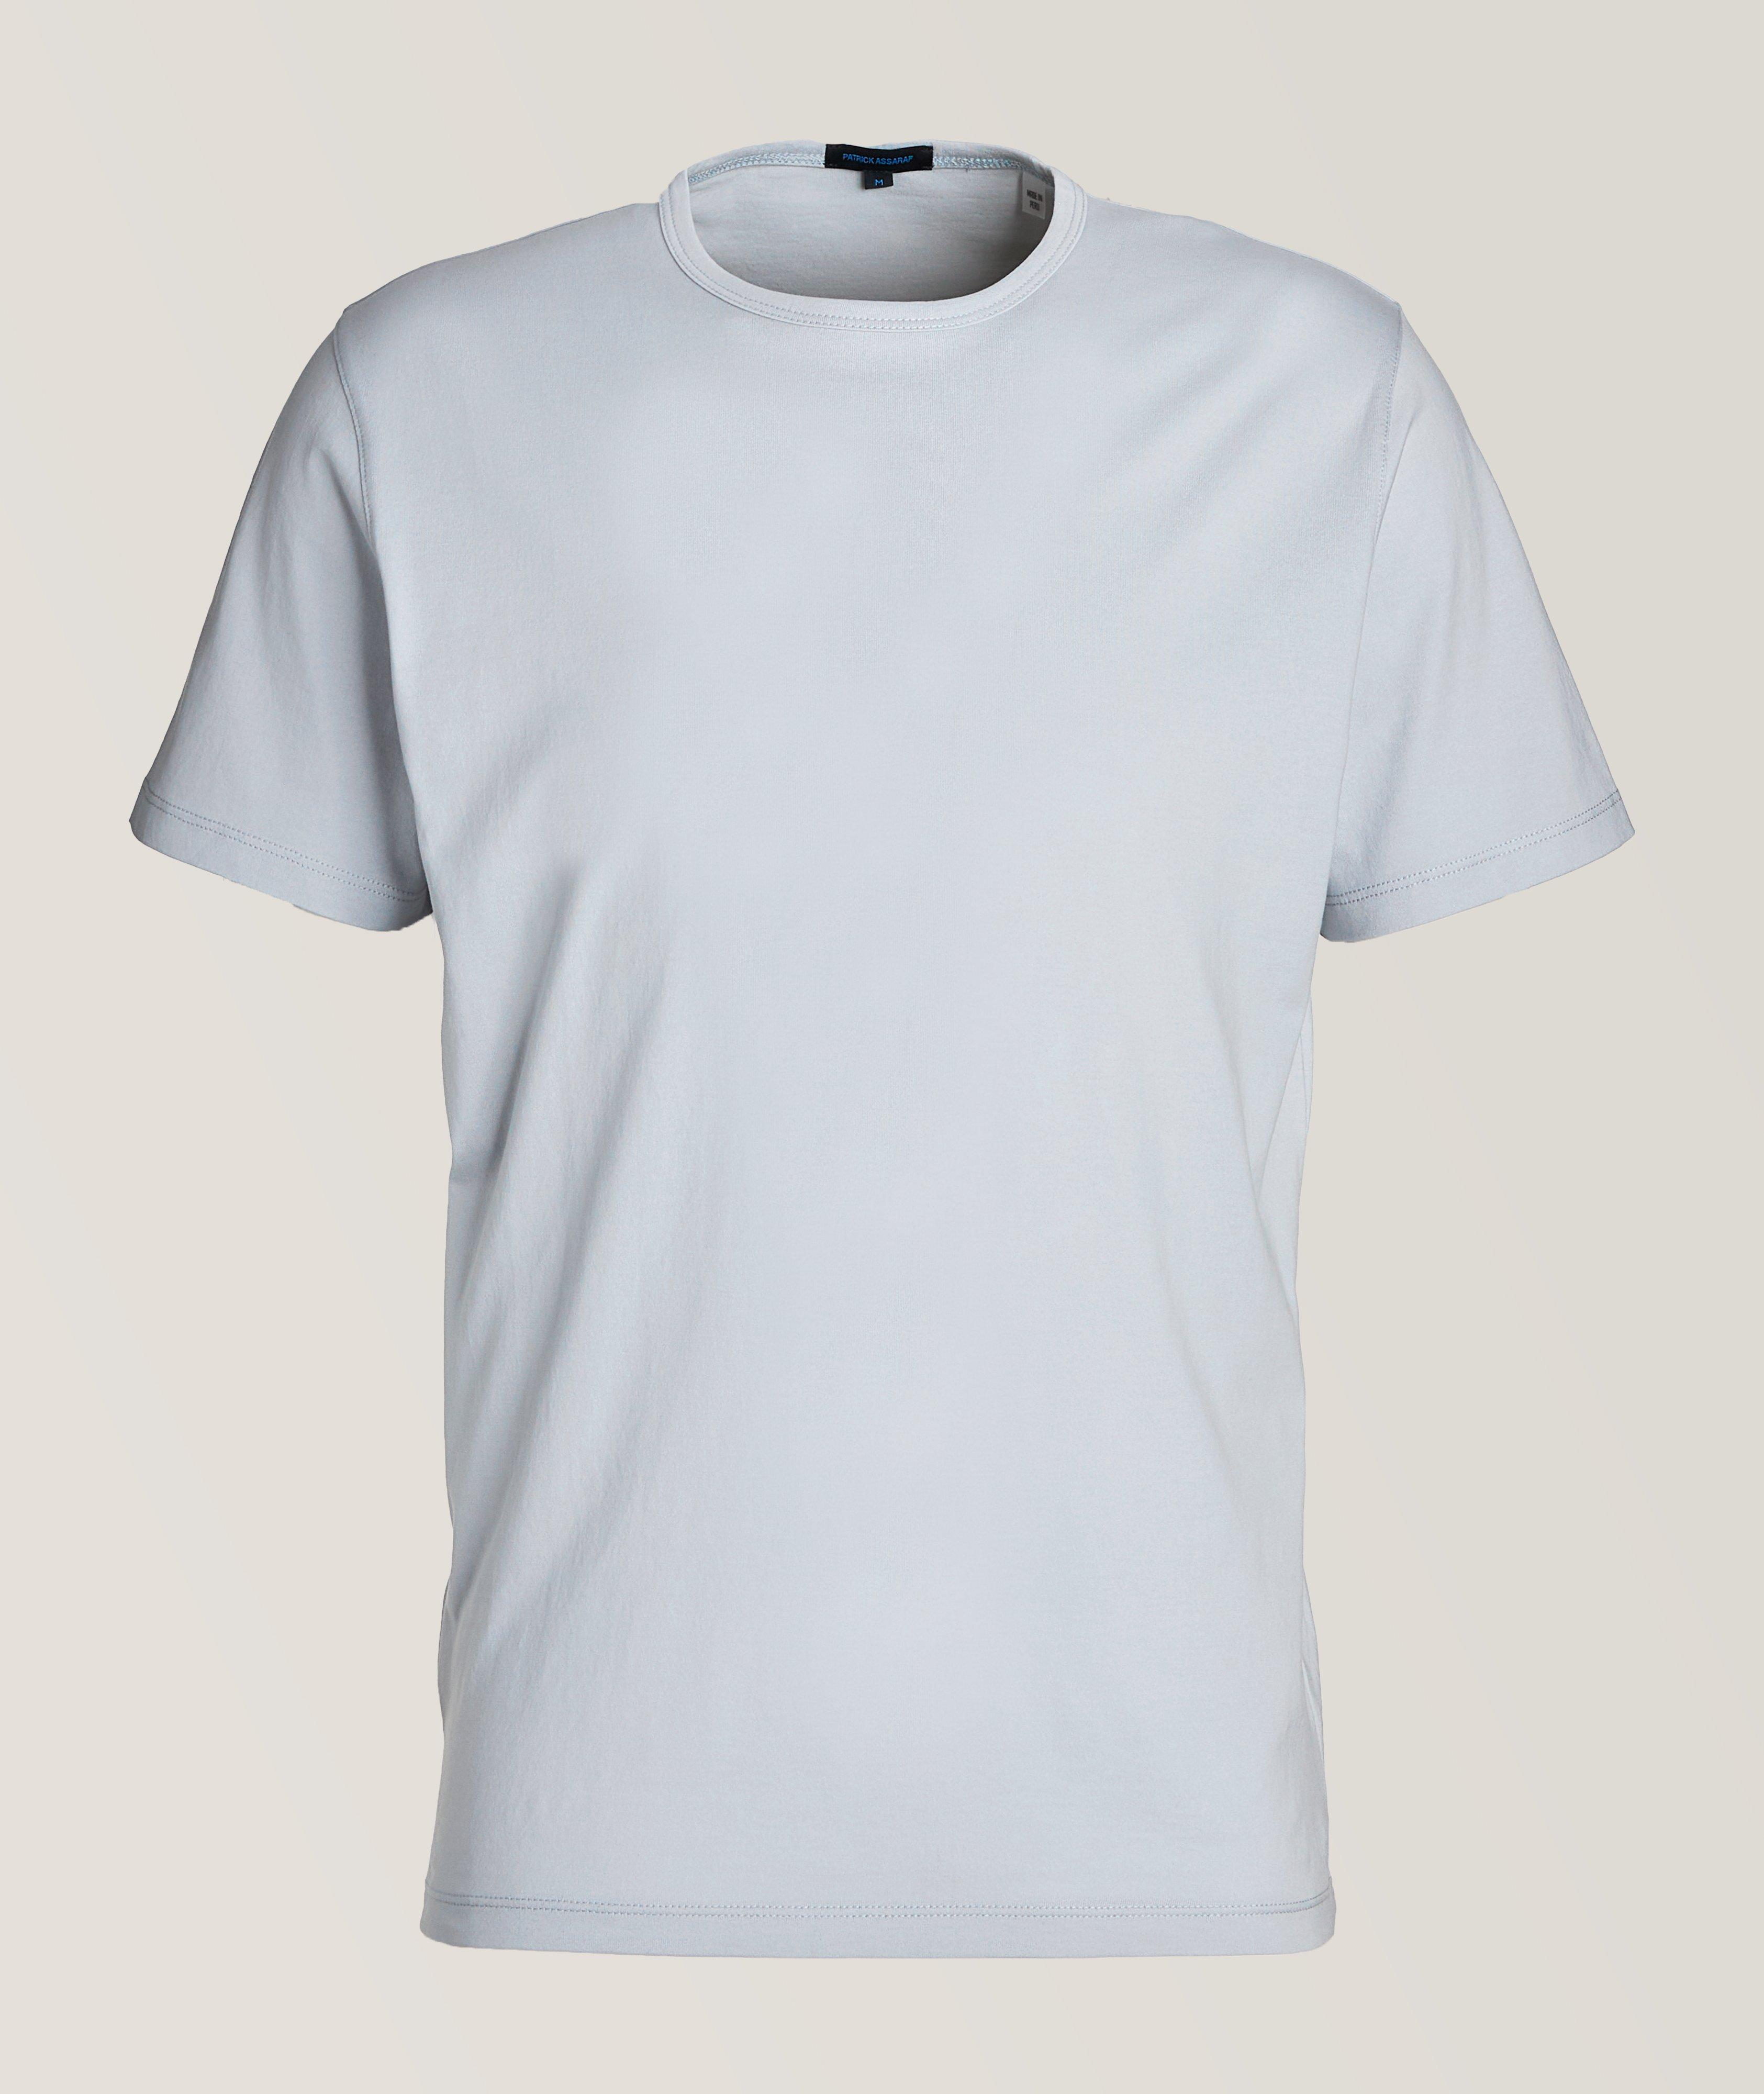 T-shirt uni en coton pima image 0